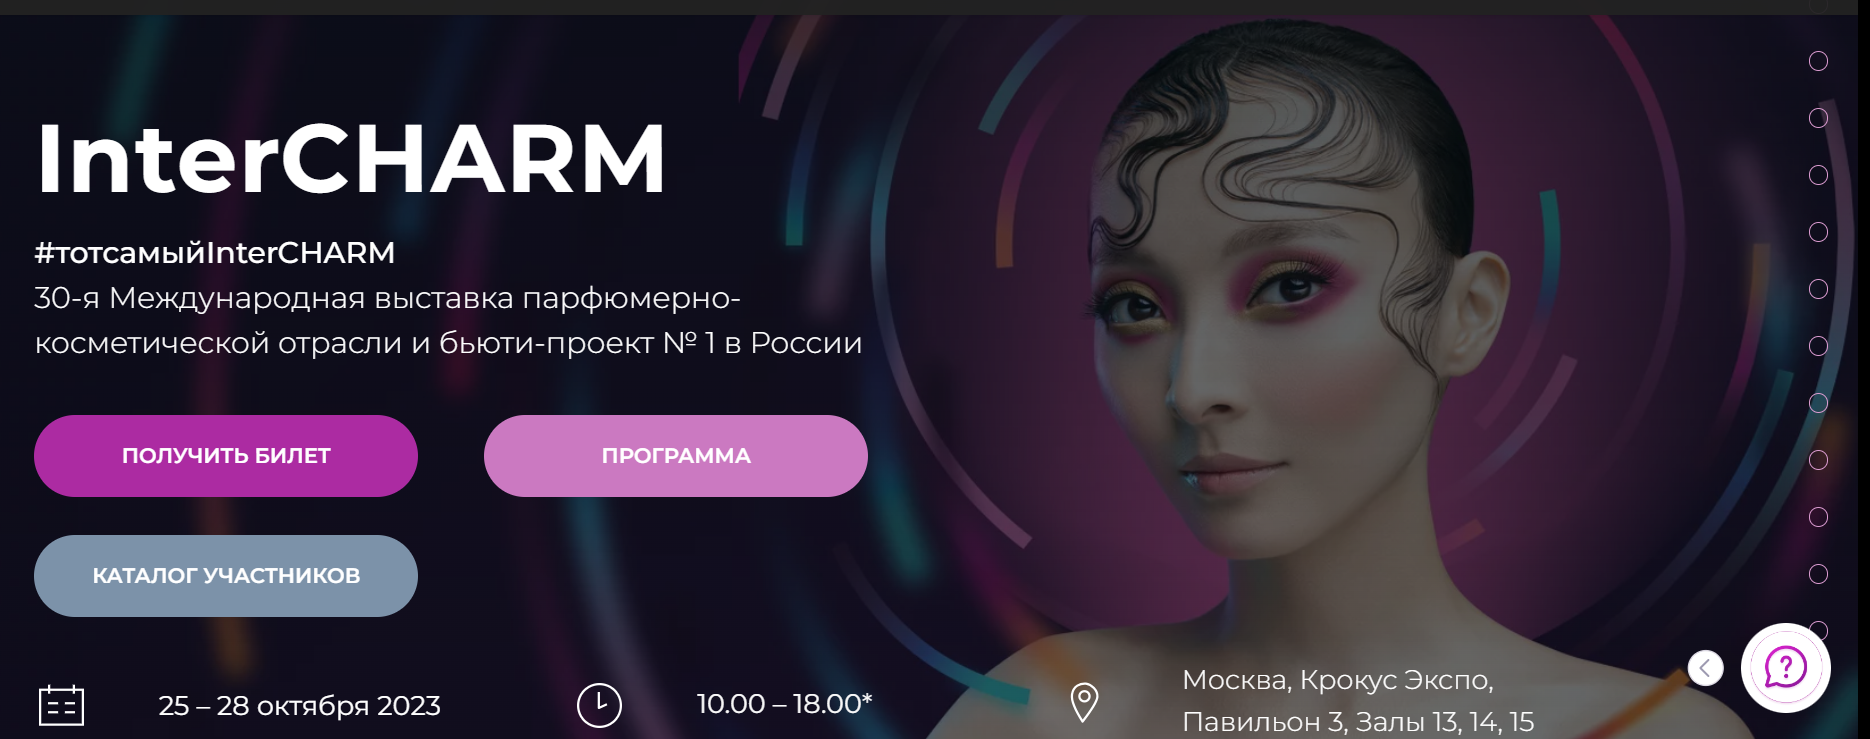 InterCHARM - второй день главного события парфюмерно-косметической отрасли в России